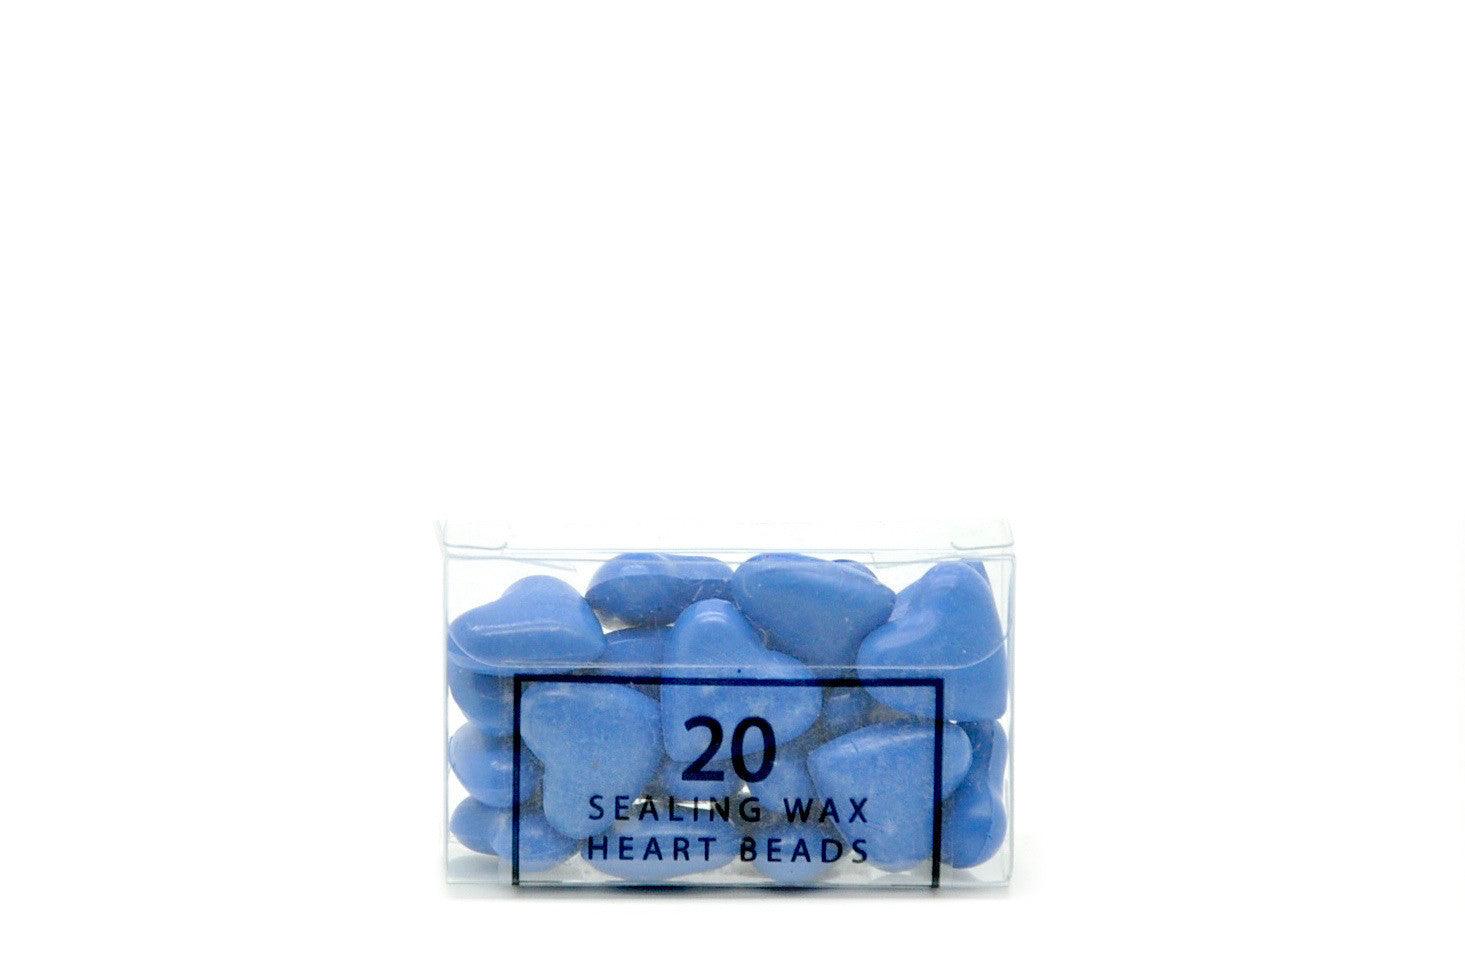 Light Blue Sealing Wax Heart Bead - Backtozero B20 - Heart Bead, Heart Wax, Light Blue, sale, Sealing Wax, Wax Bead